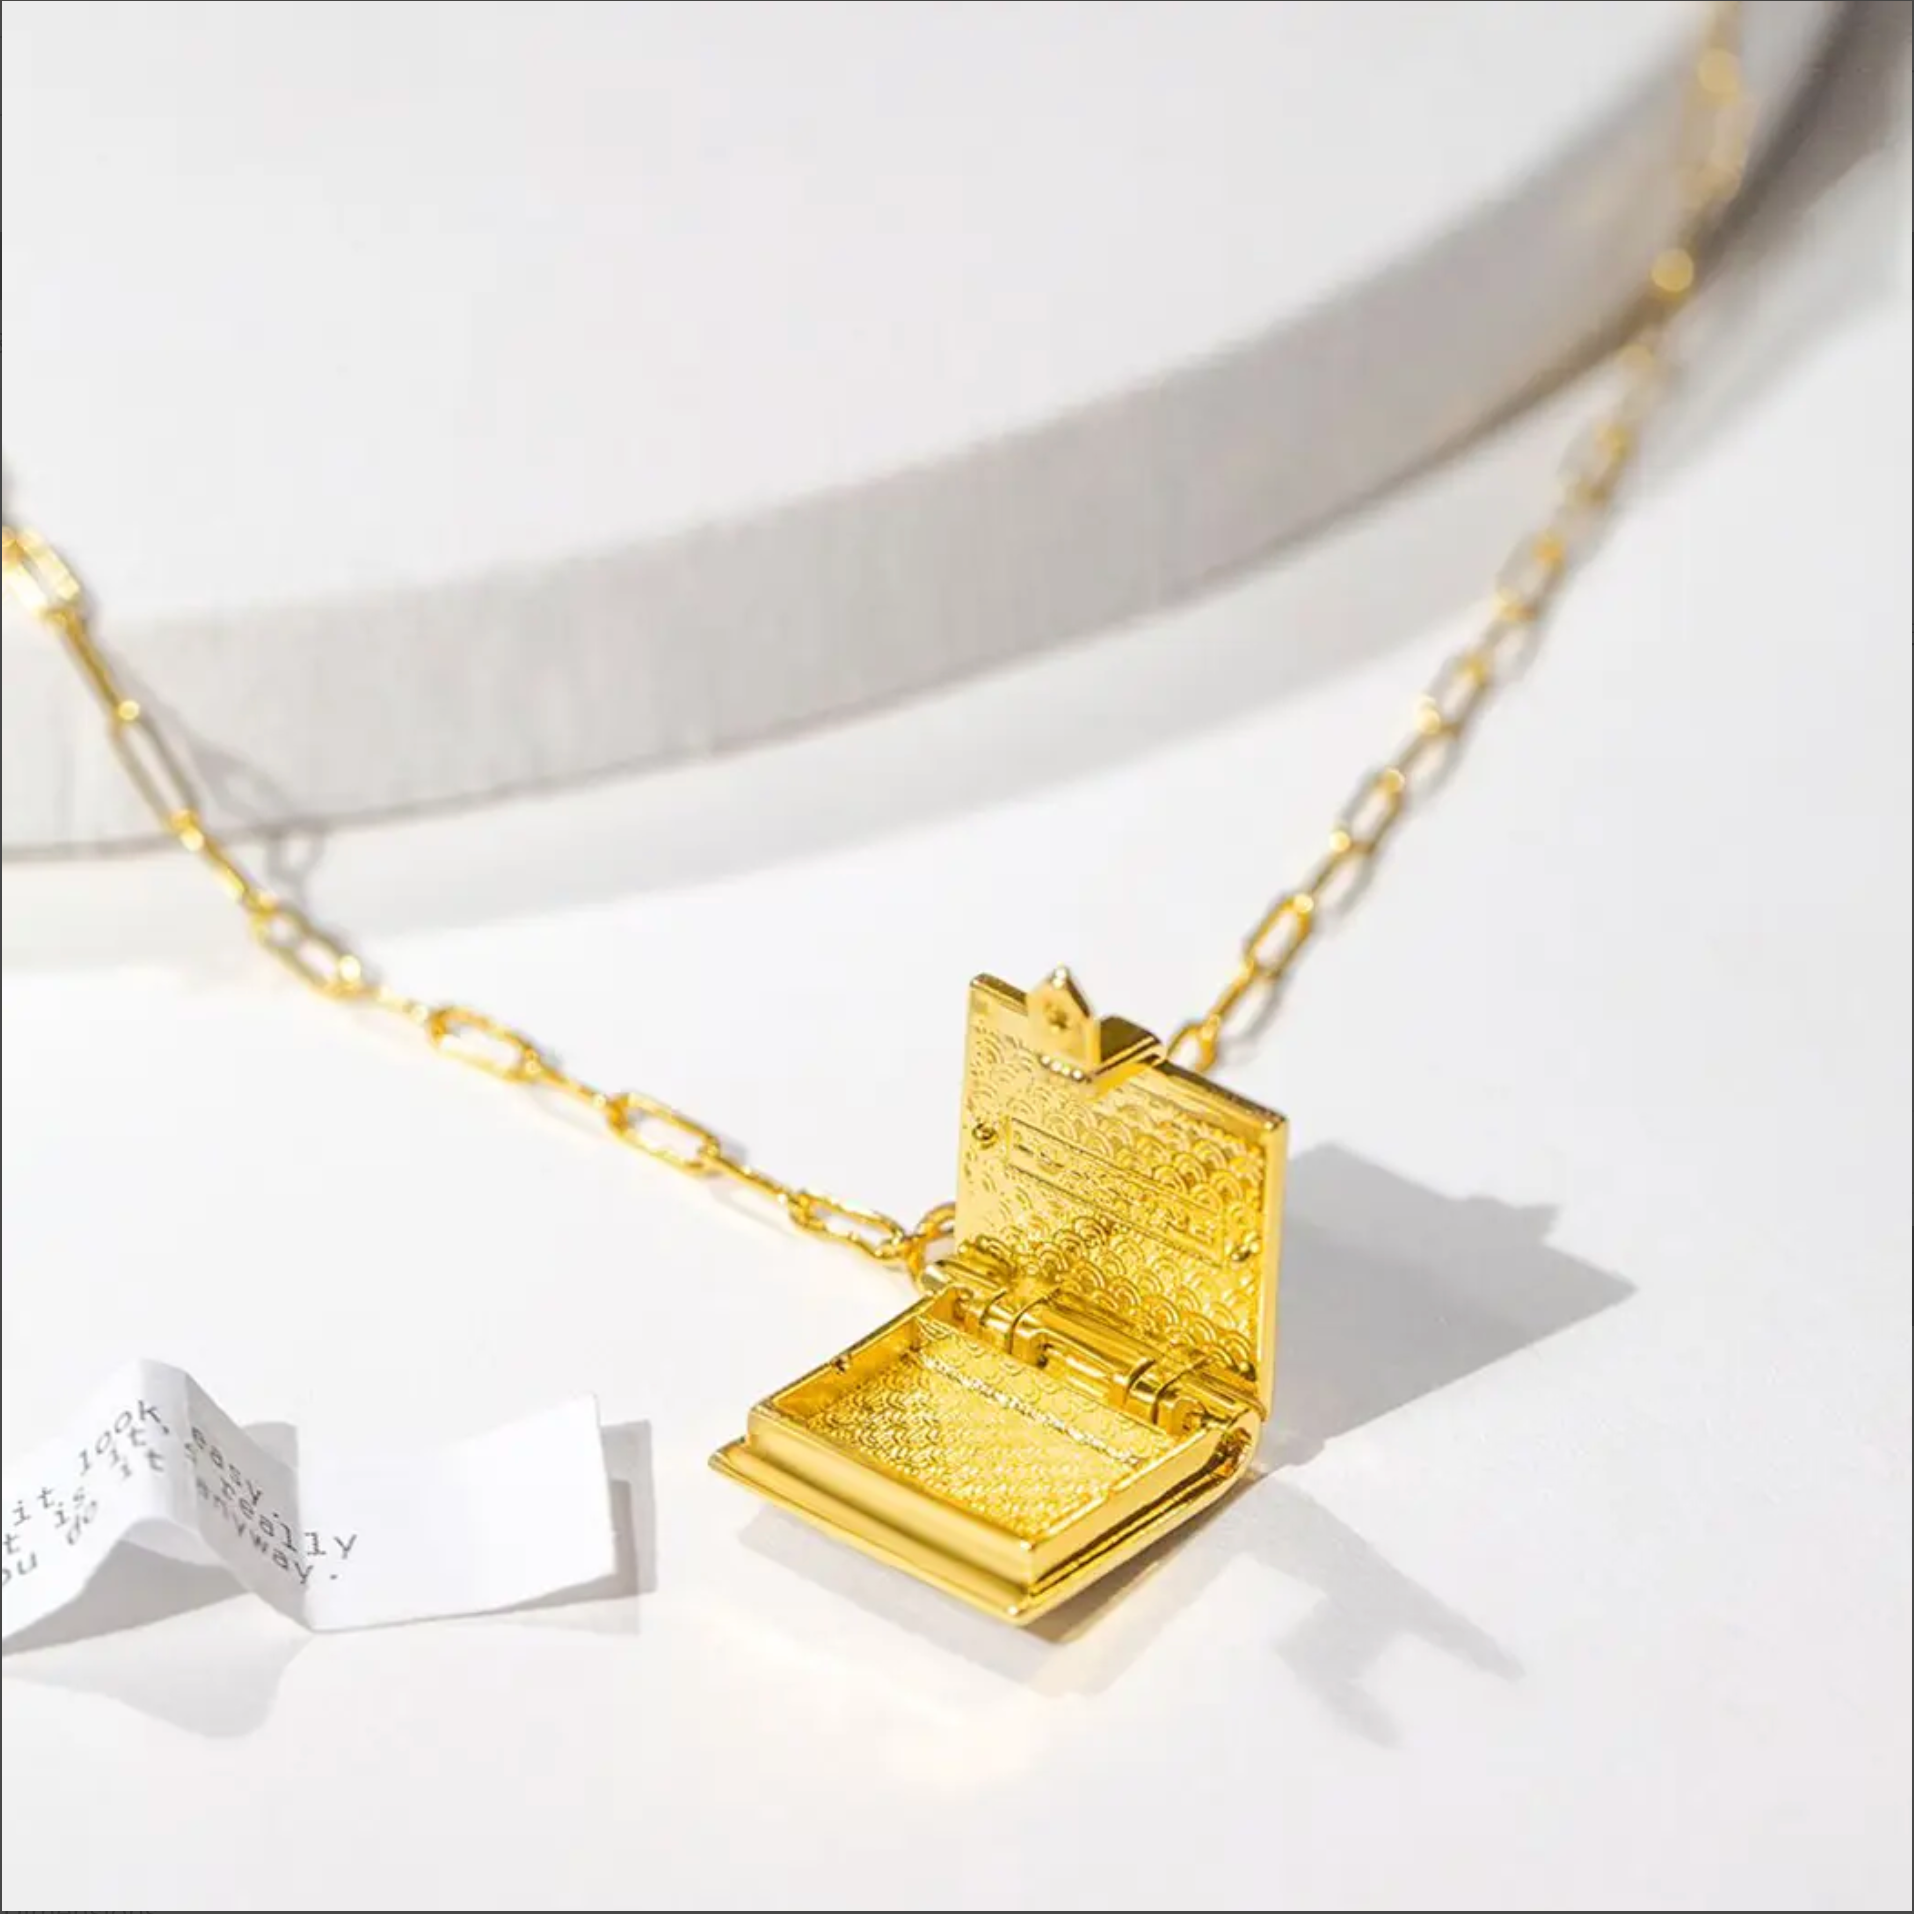 SALE Secret Diary Gold Book Locket Necklace – Em & Lizzie's